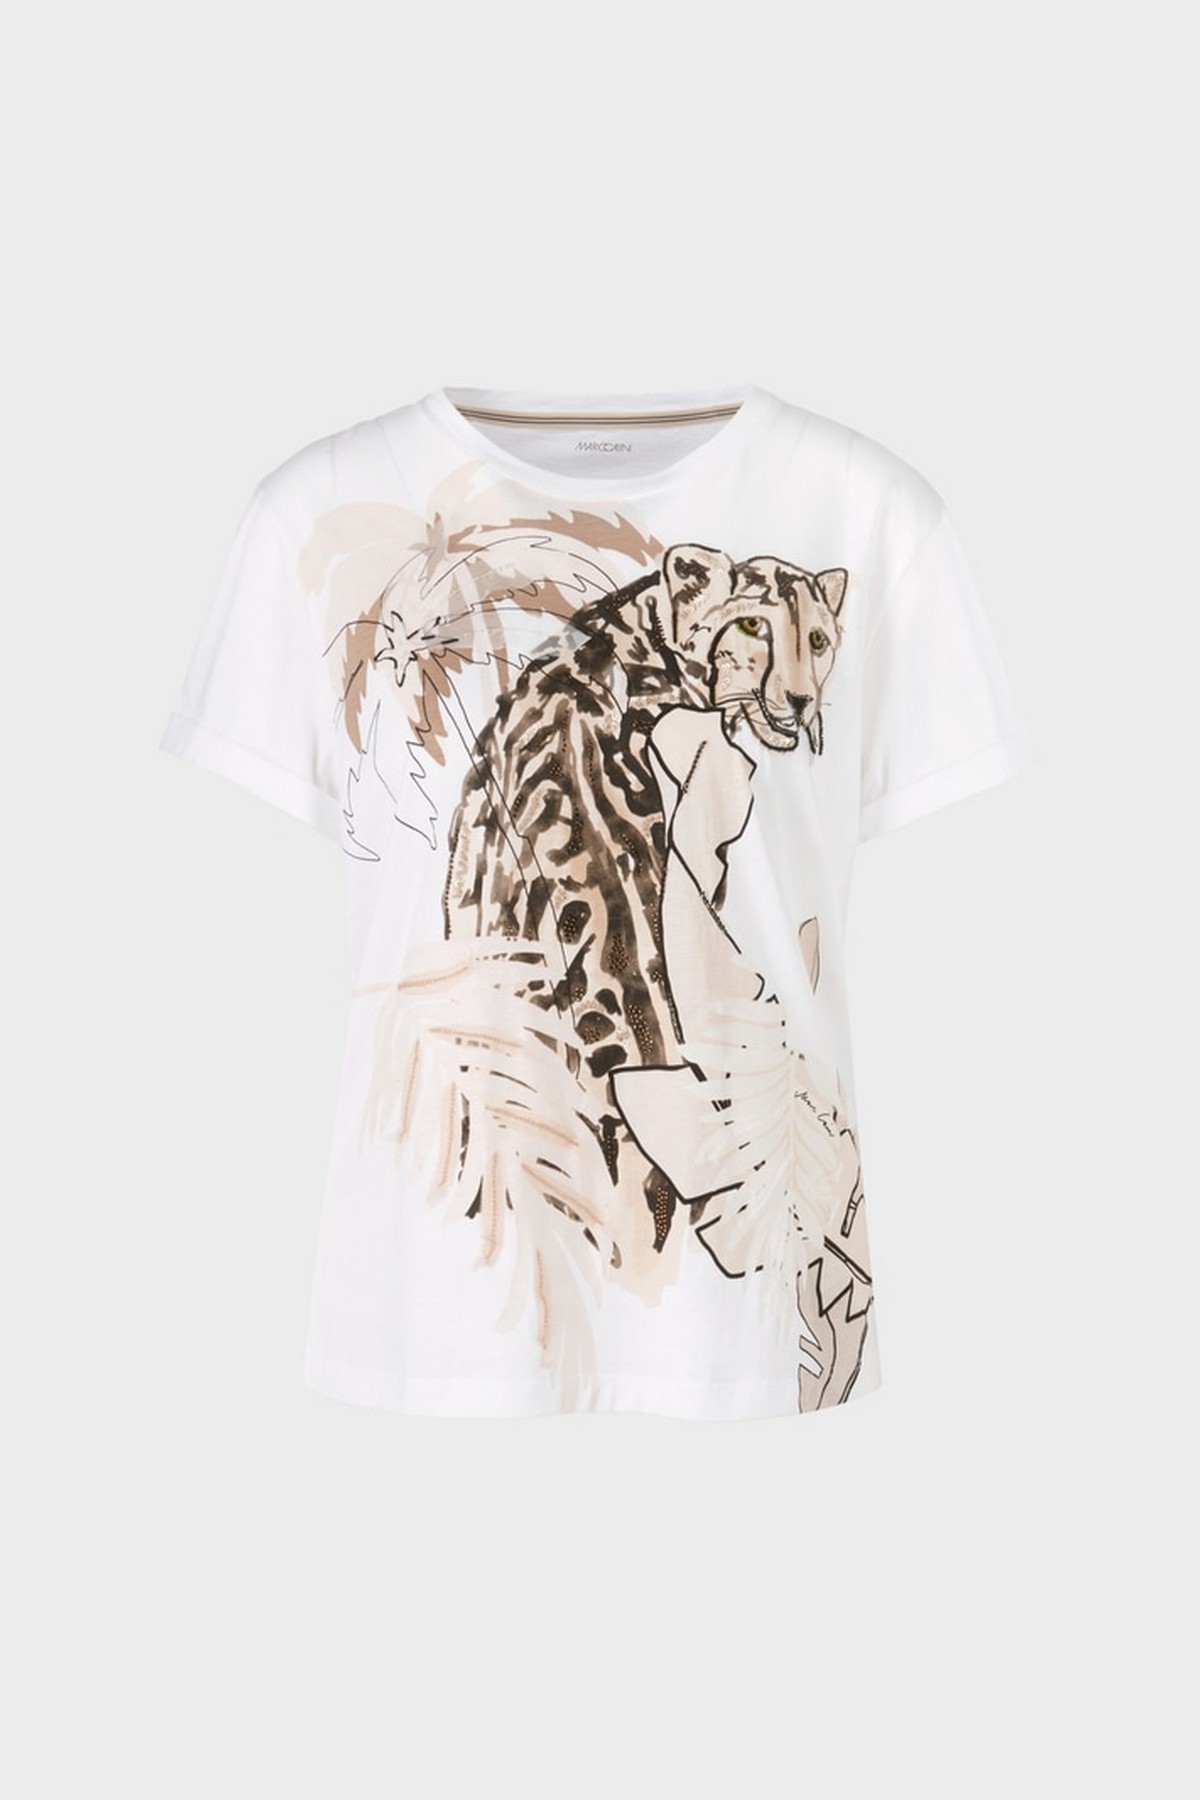 T-shirt met diermotief in de kleur wit zand van het merk Marc Cain Collections